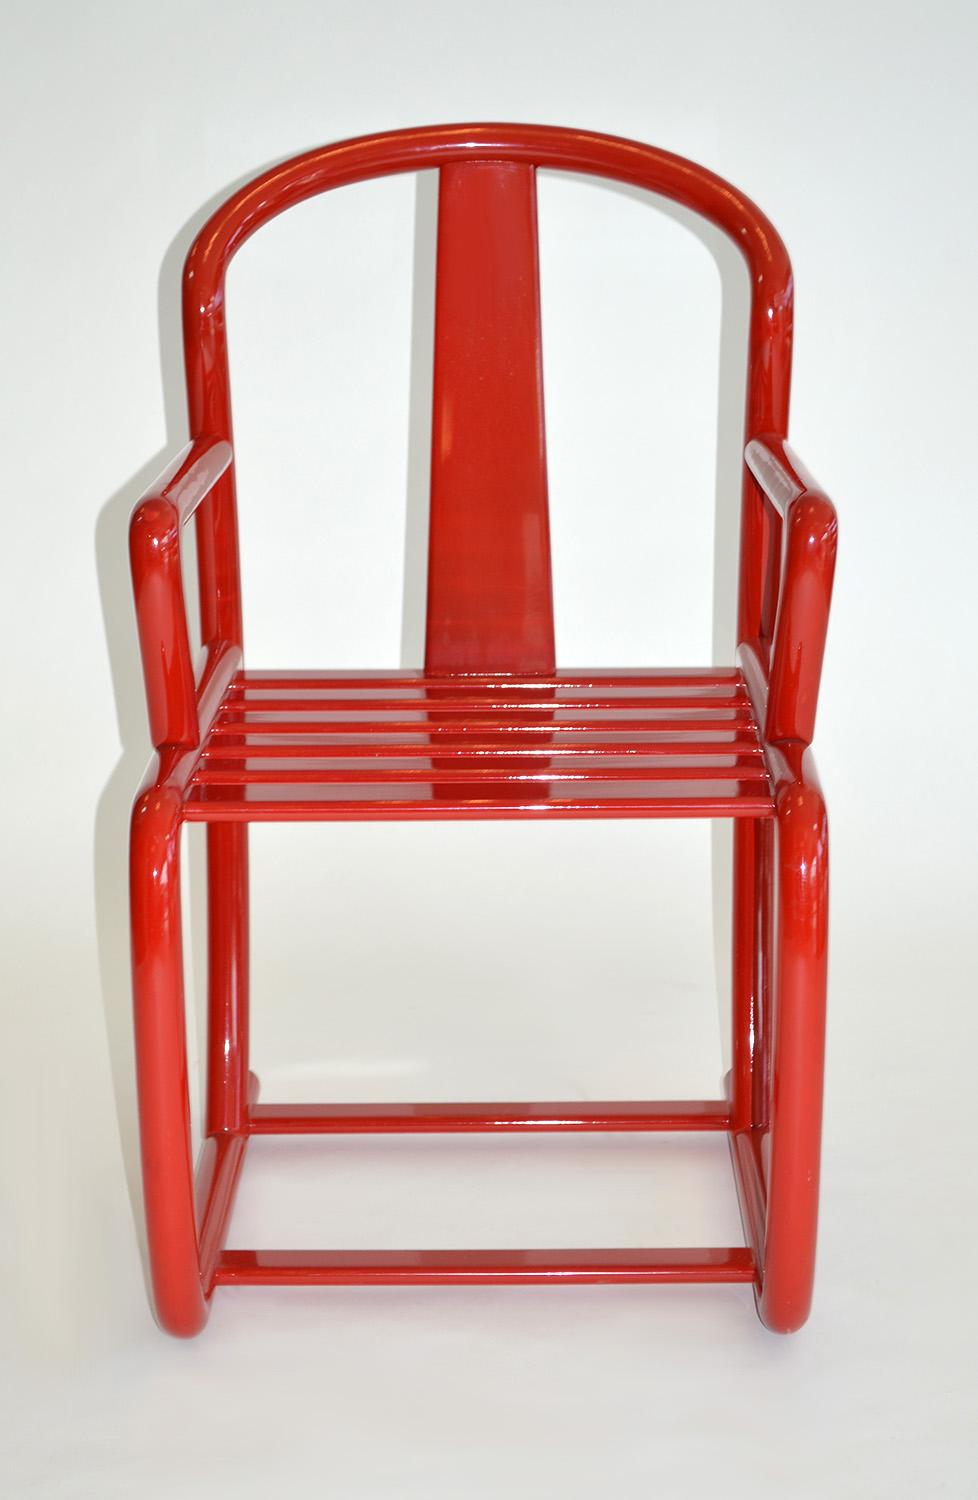 Ensemble de quatre chaises de salle à manger modernes en laque rouge, Italie, années 1980. 
Chaises / fauteuils / chaises de salle à manger en bois laqué rouge tomate brillant de Tecnosedia, Italie. Hauteur du siège : 43 cm. Éraflures et frottements